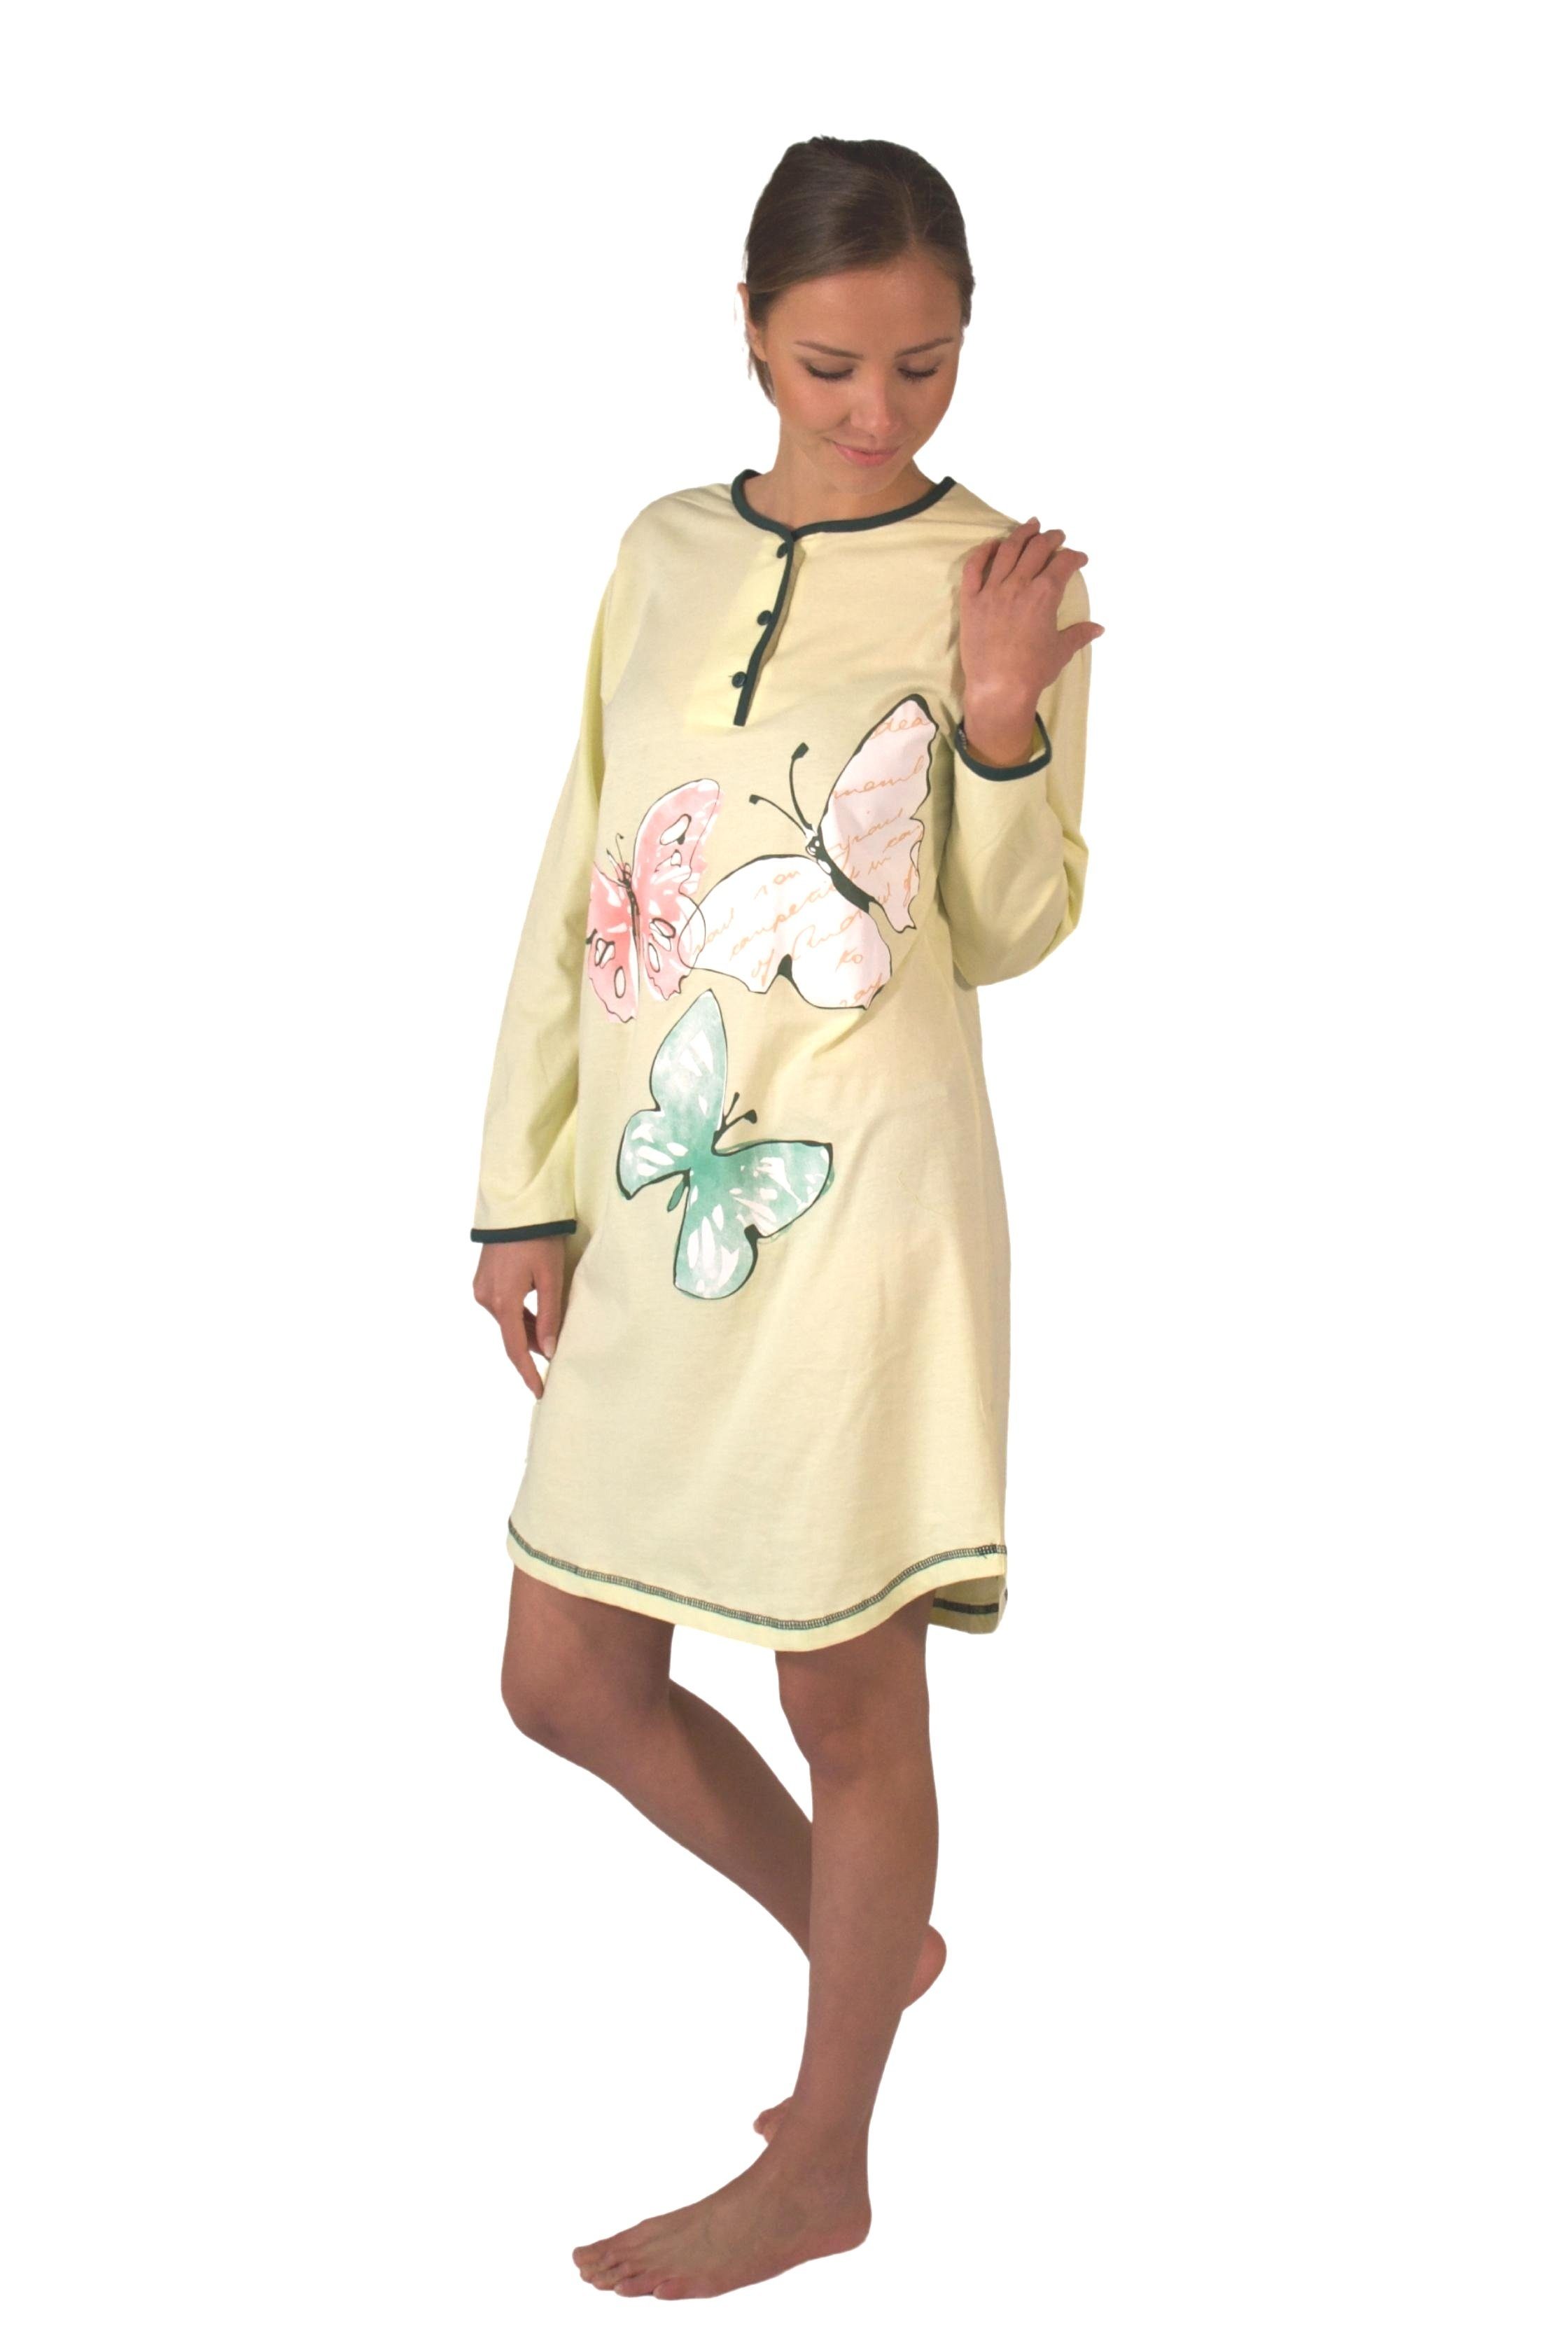 Consult-Tex Nachthemd Damen BaumwolleJersey Nachthemd DW720 bequem zu tragen mintgrün